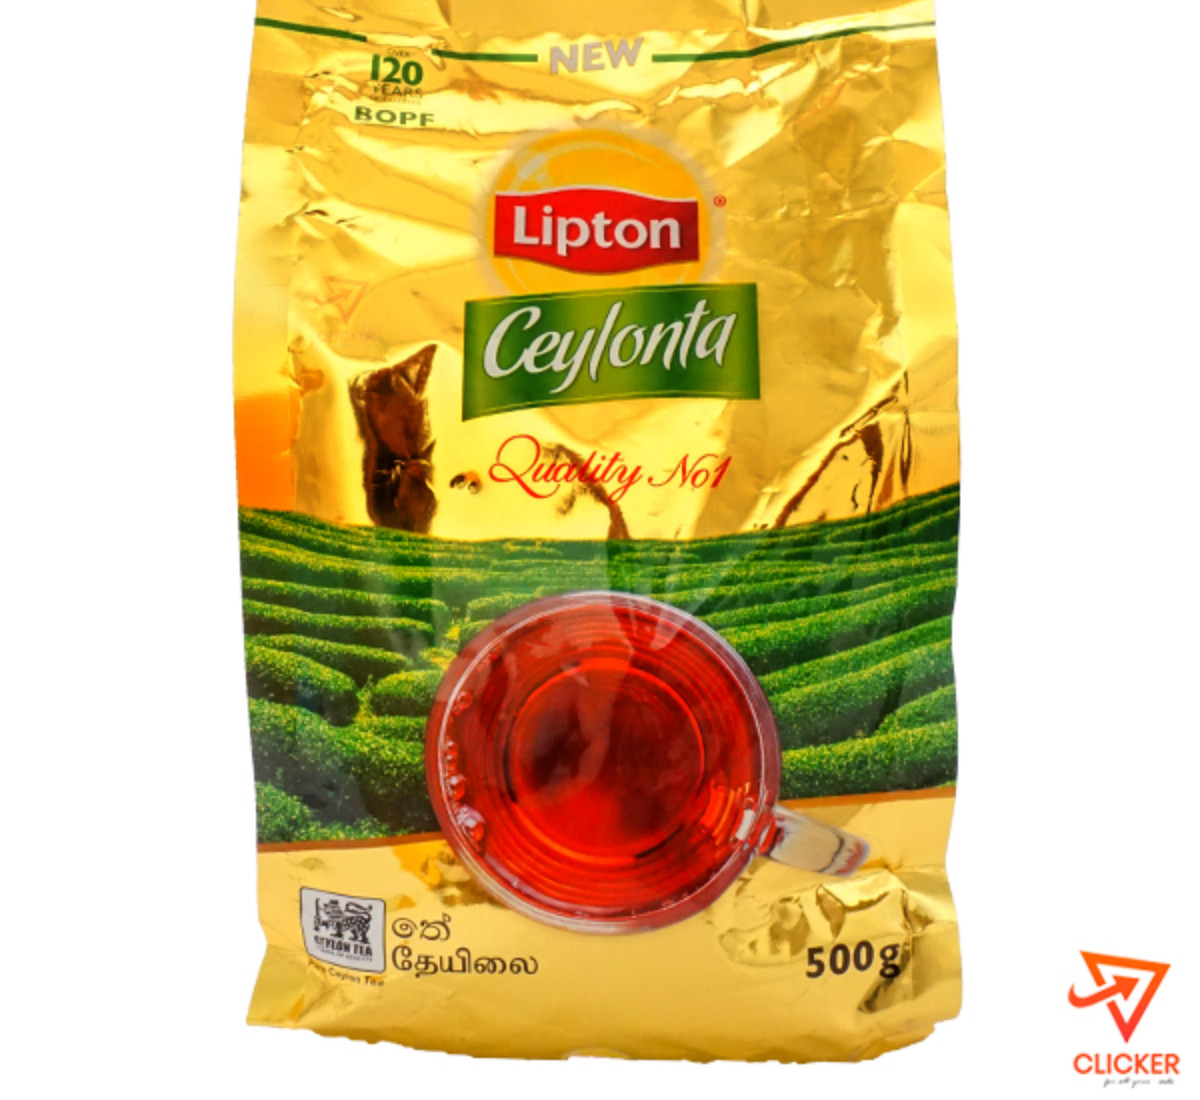 Clicker product 500g LIPTON Ceylonta Tea 951